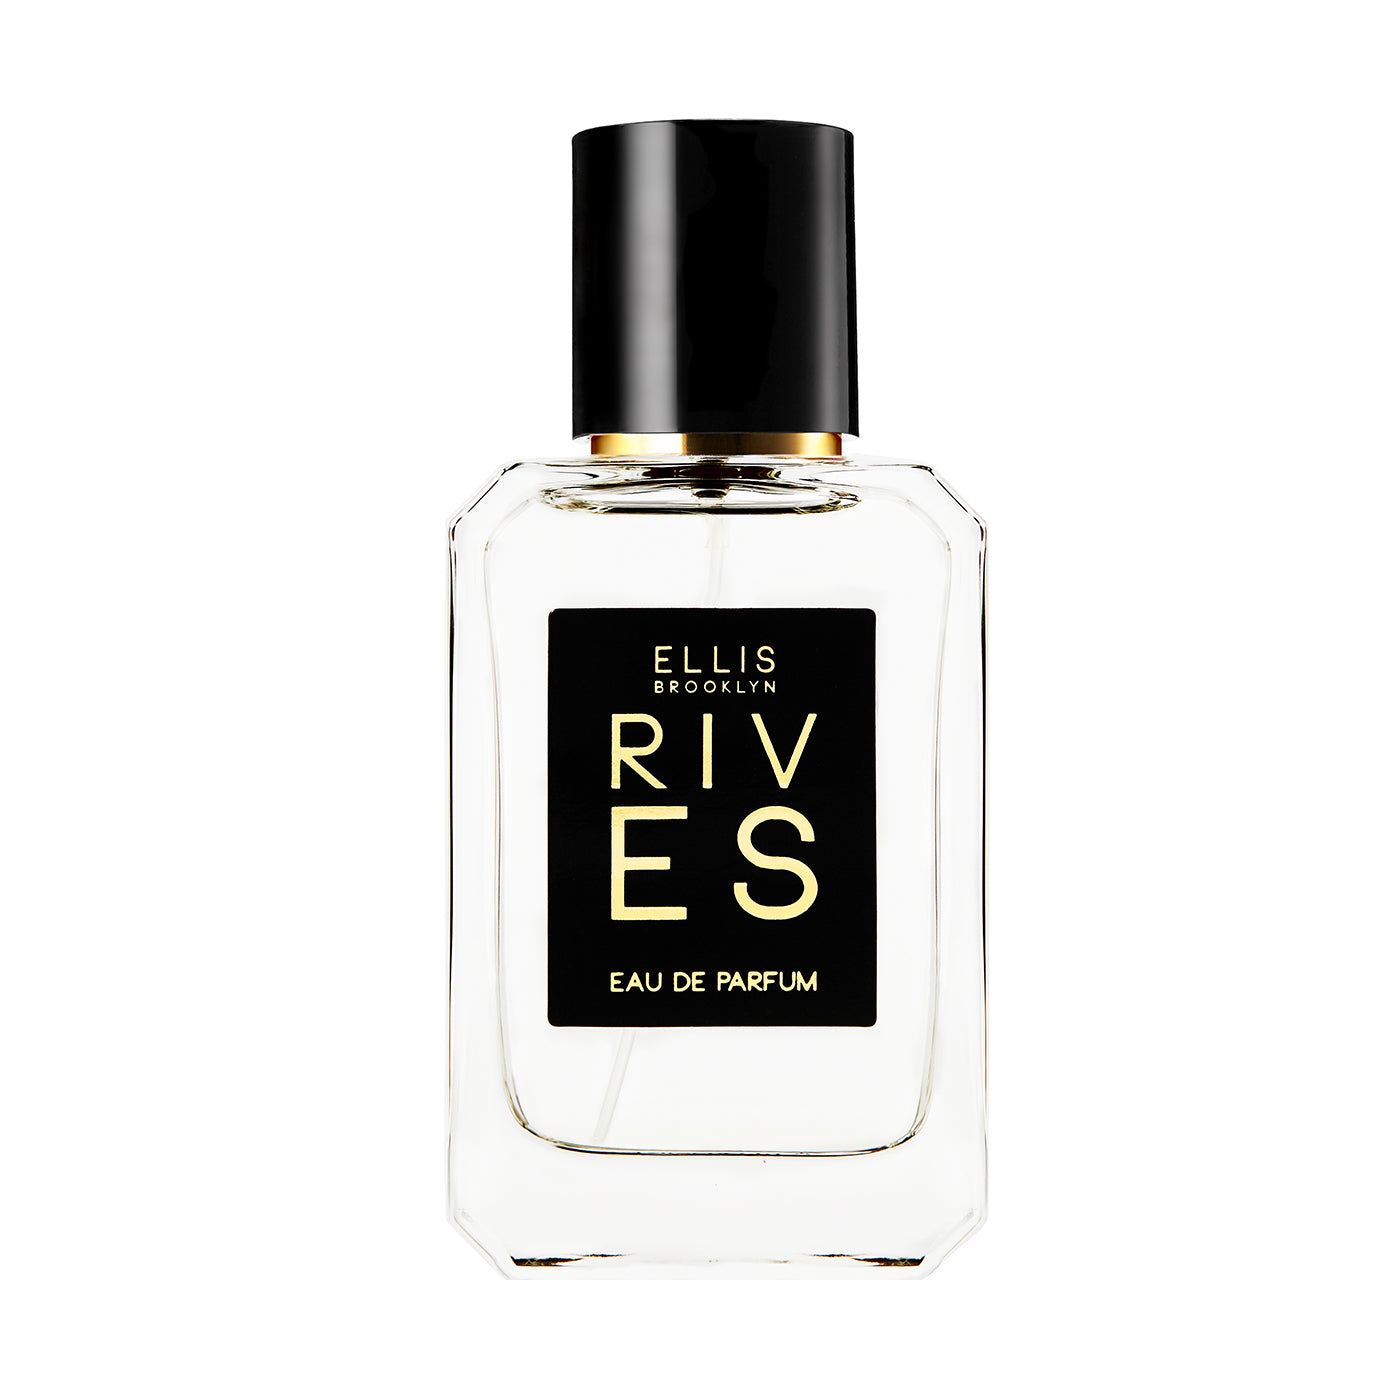 Ellis Brooklyn Eau de Parfum - Rives 1.7oz